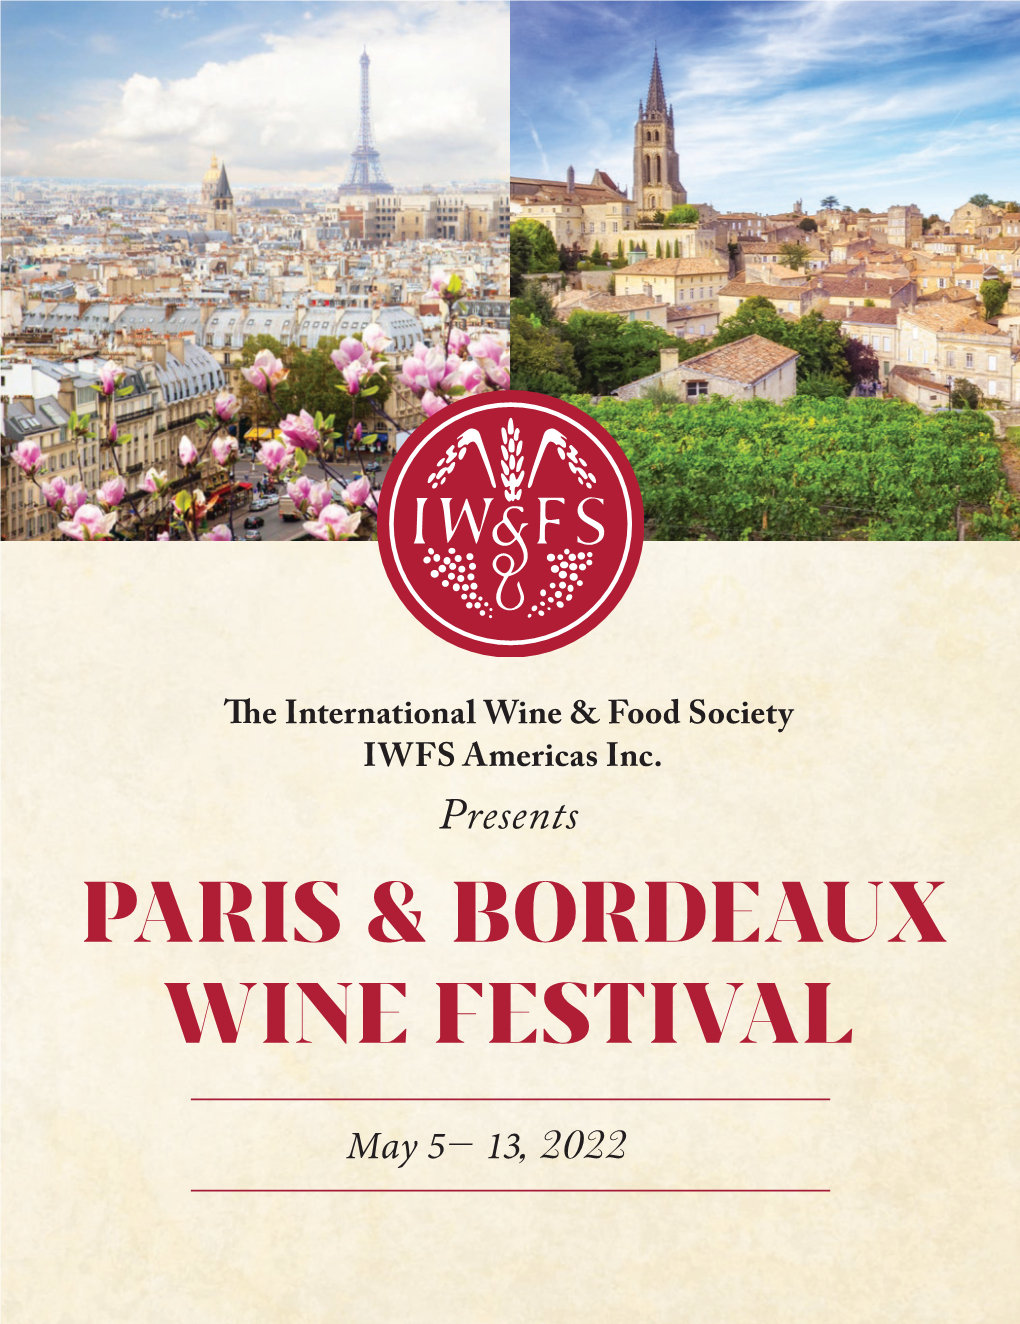 Paris & Bordeaux Wine Festival